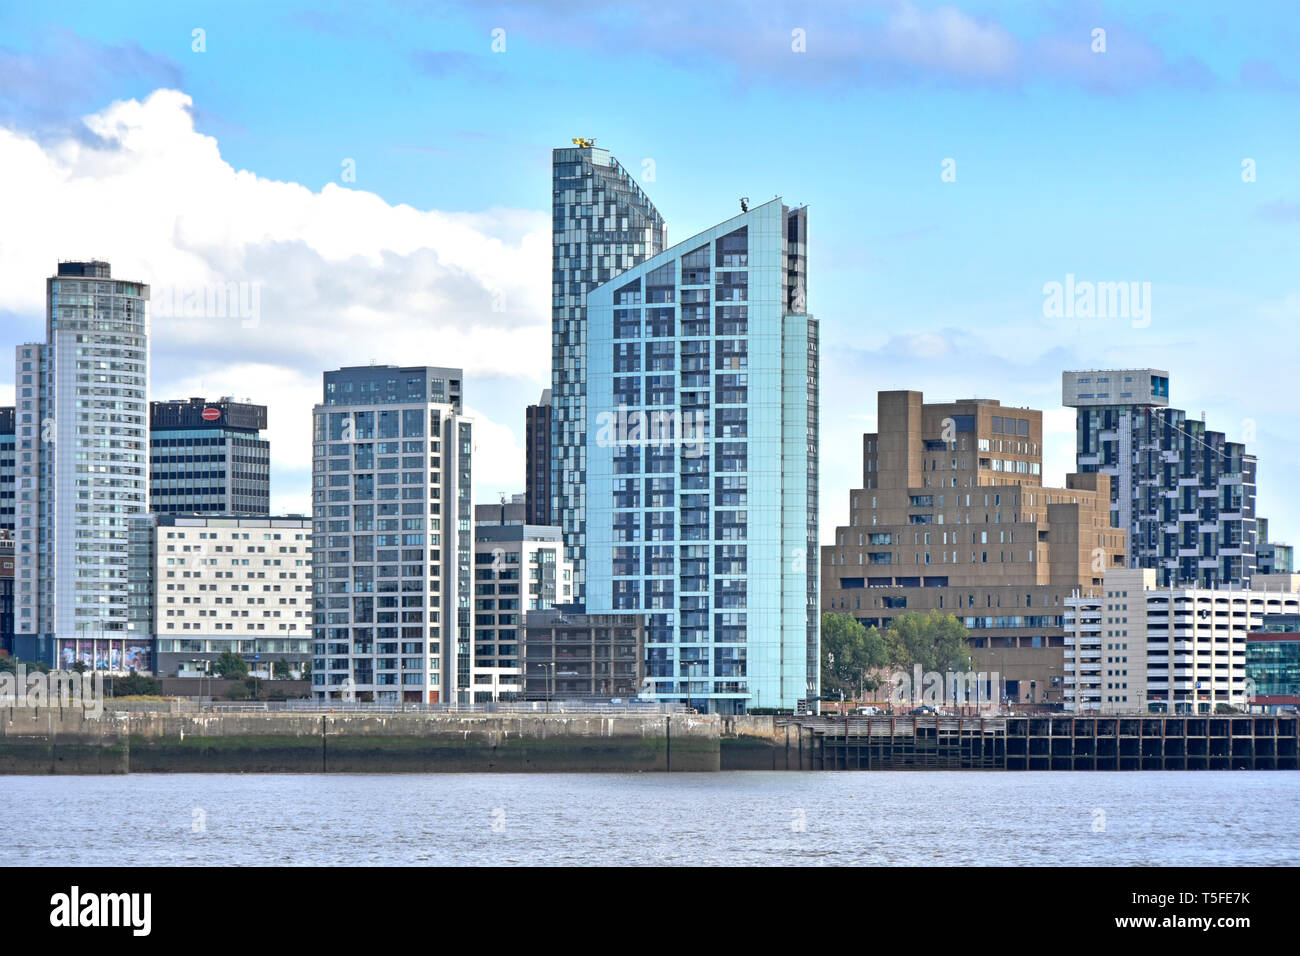 Modernes hohes Riverside Sehenswürdigkeiten Wohnen & Büro Gebäude am Ufer des Flusses Mersey Waterfront Skyline von Liverpool Merseyside England Großbritannien Stockfoto